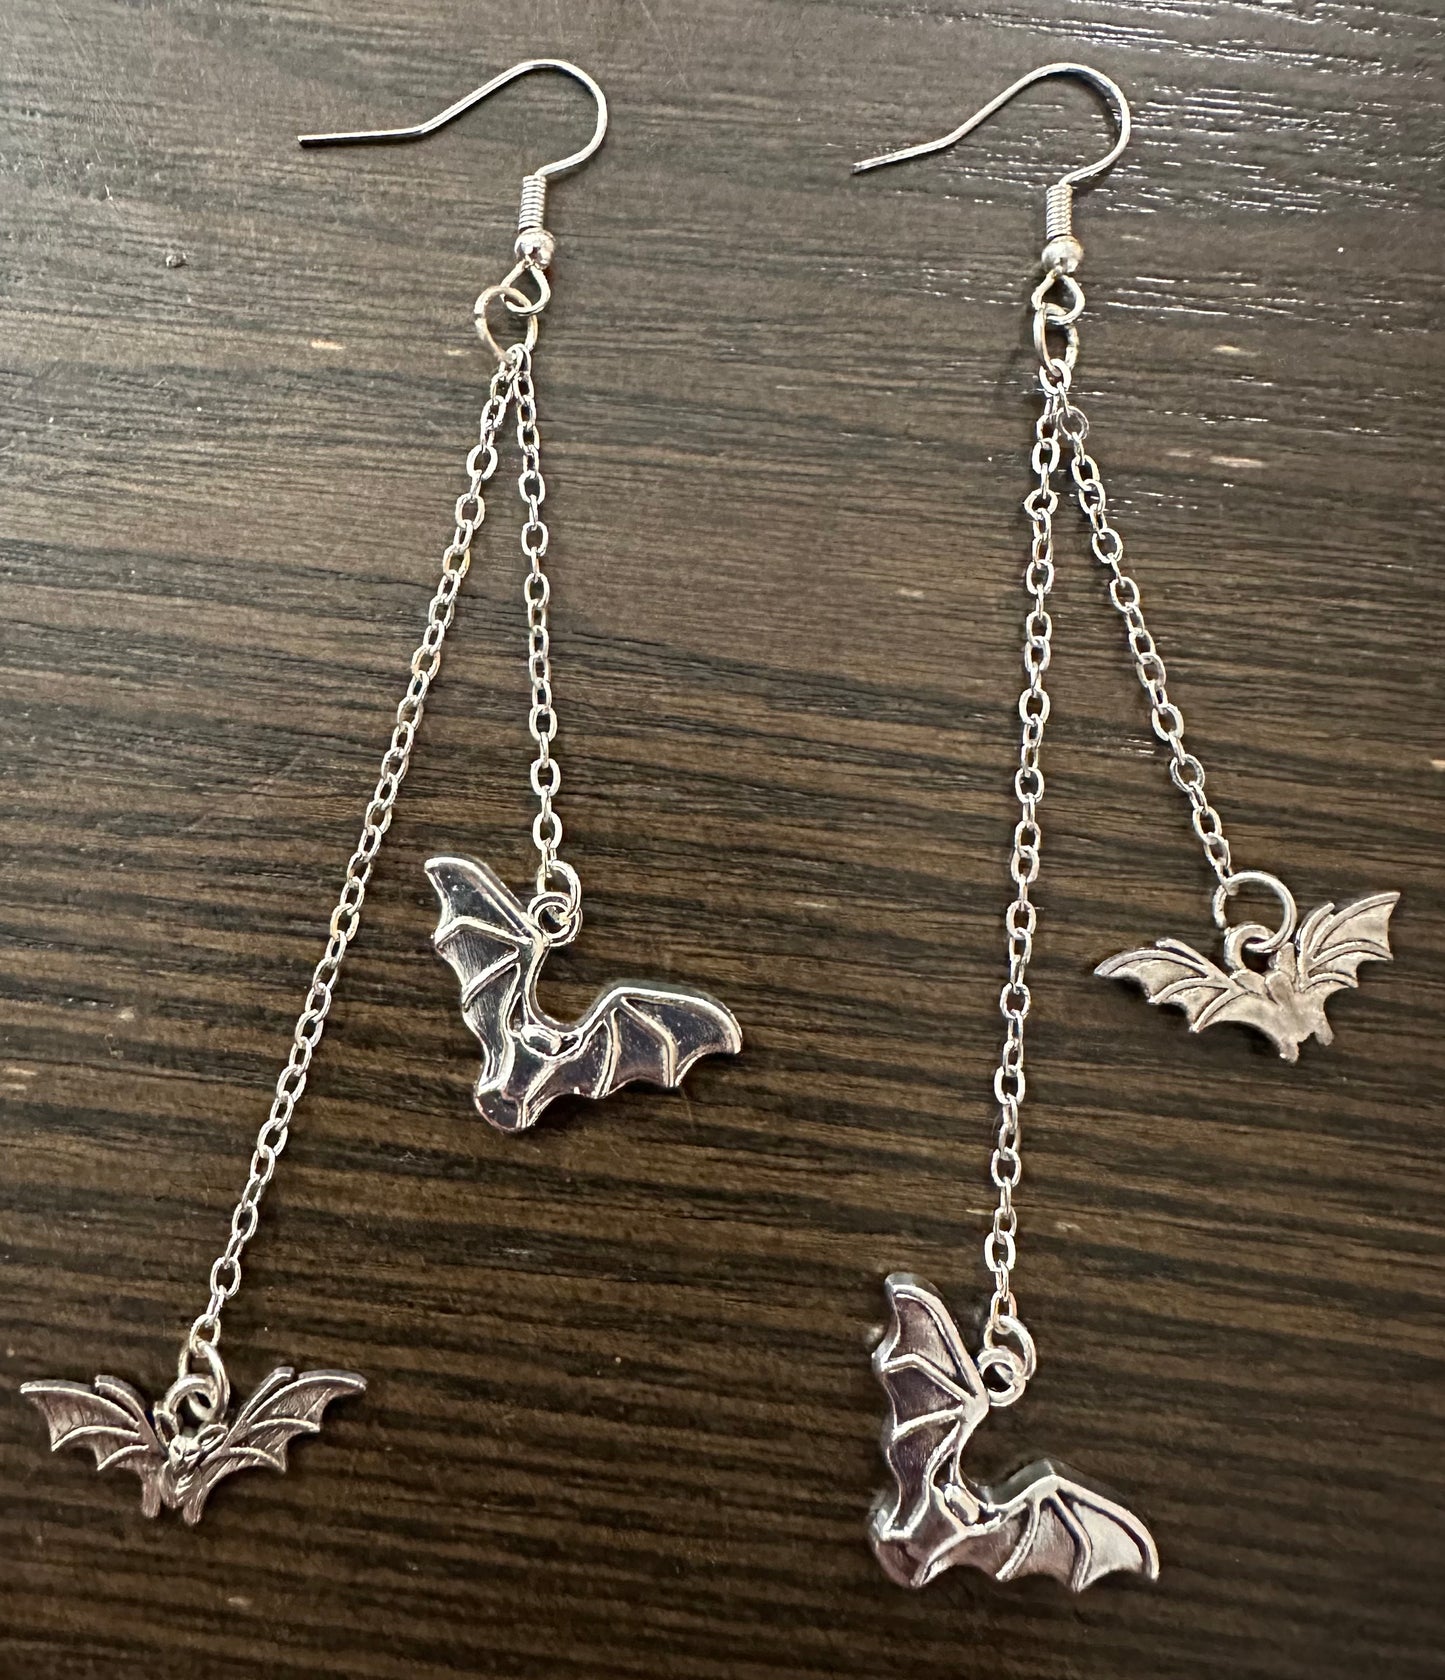 Spooky Batty chain Earrings